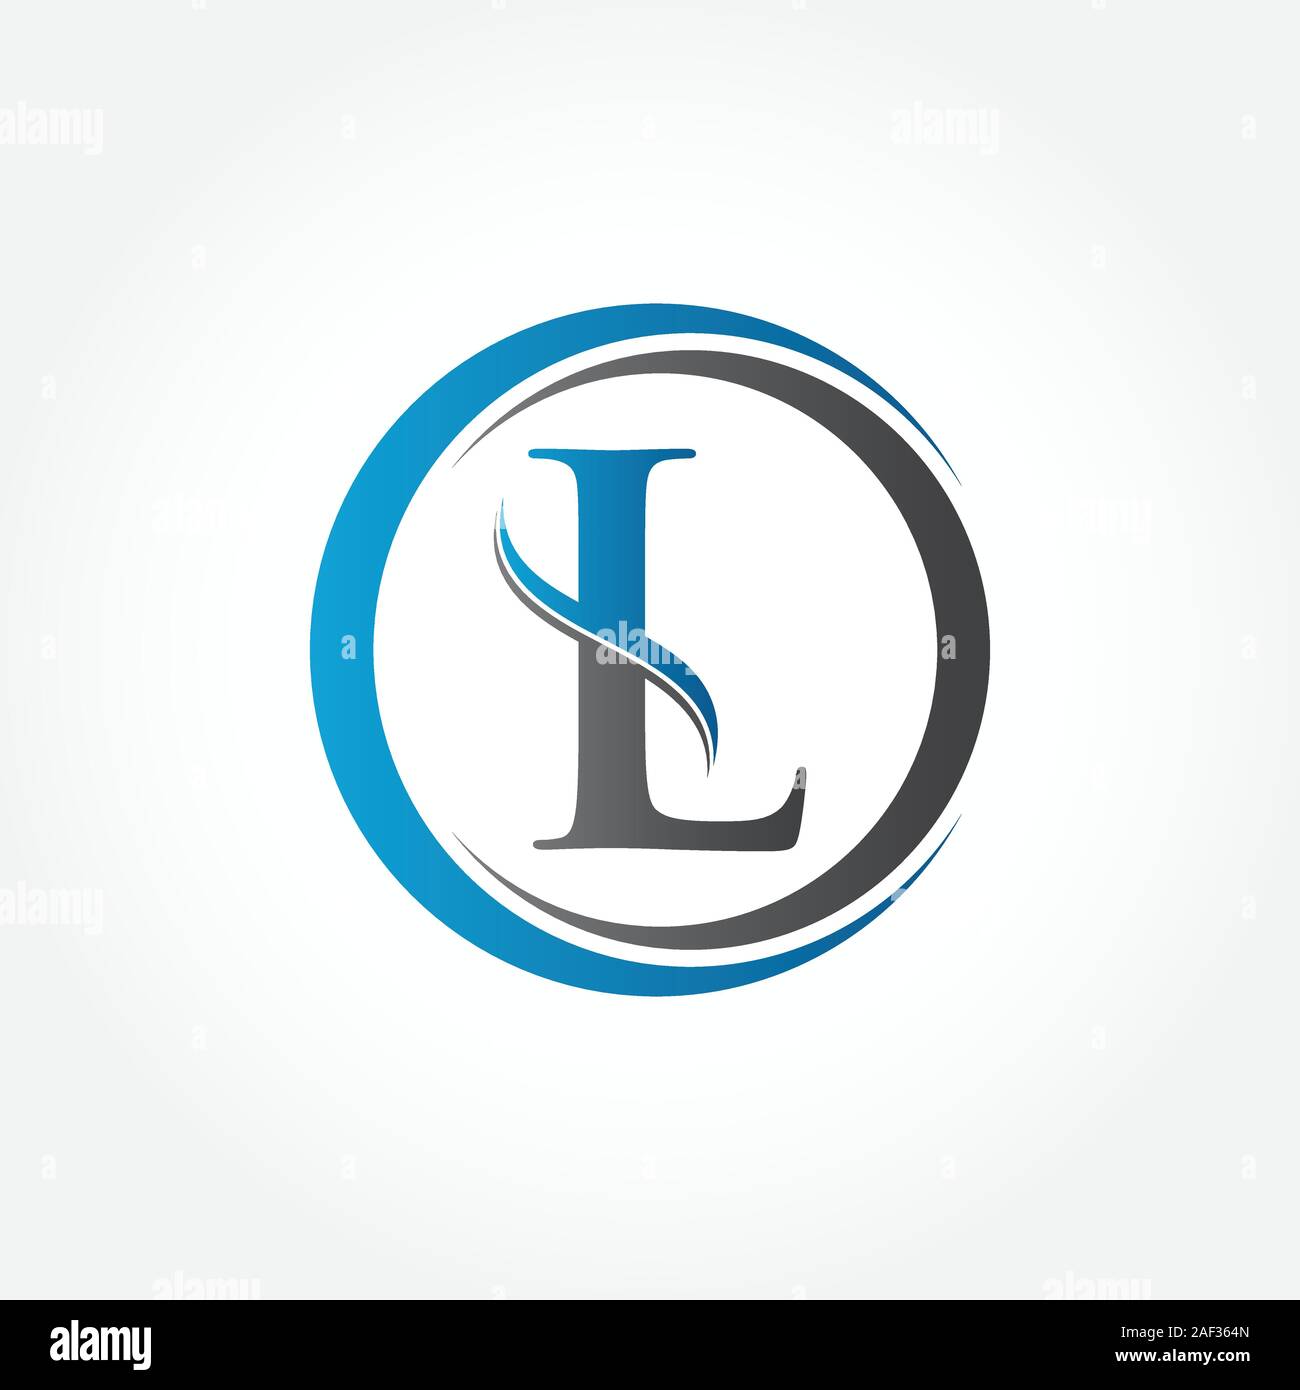 Corporate Letter Lv Logo  Lettering, ? logo, Typographic logo